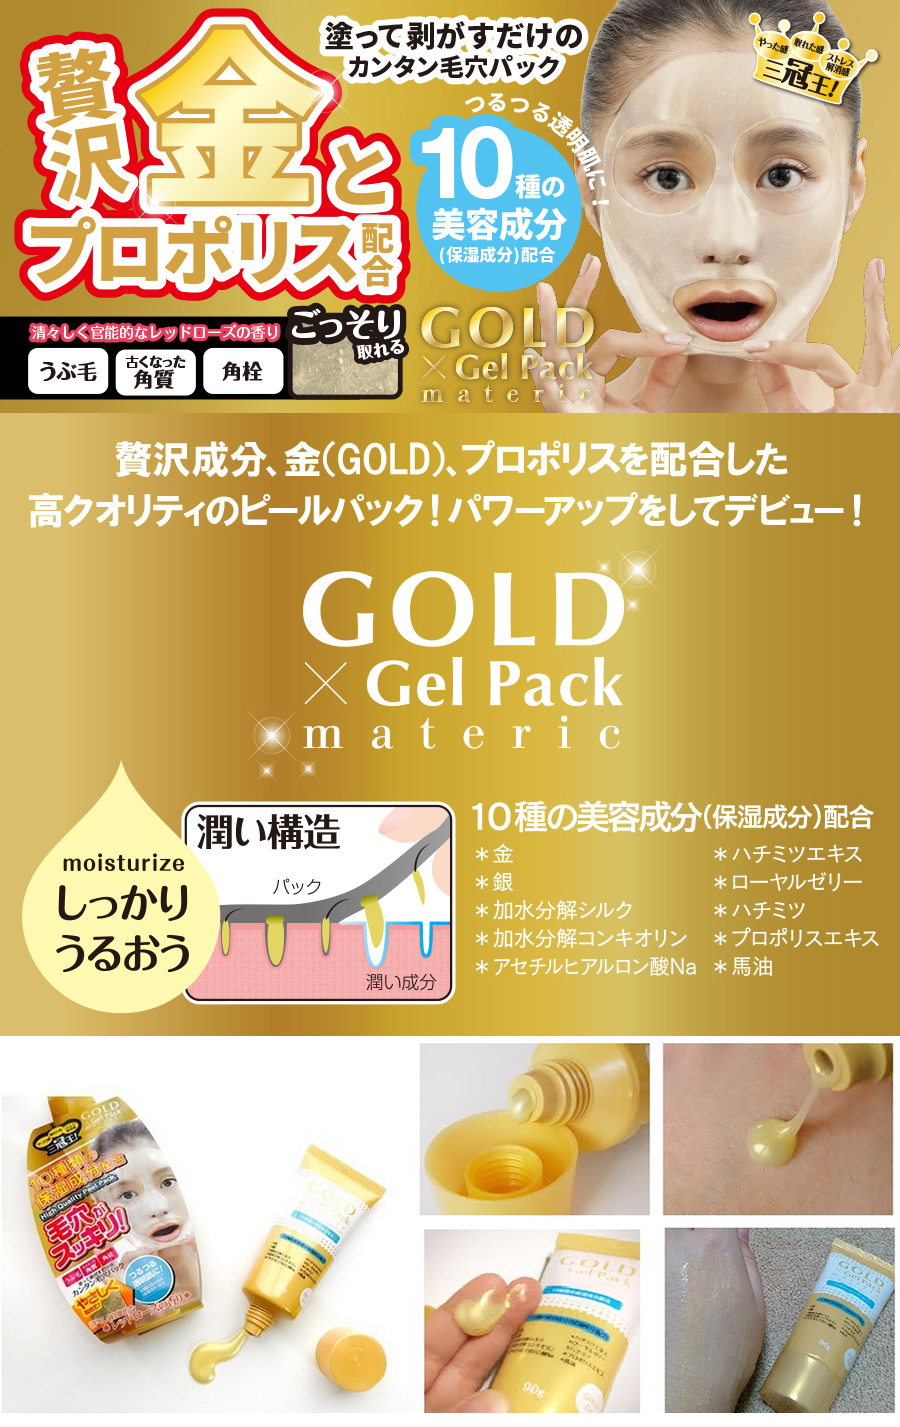 毛穴潔淨黃金凍膜-剝除式-90g | 立品衛生材料網站